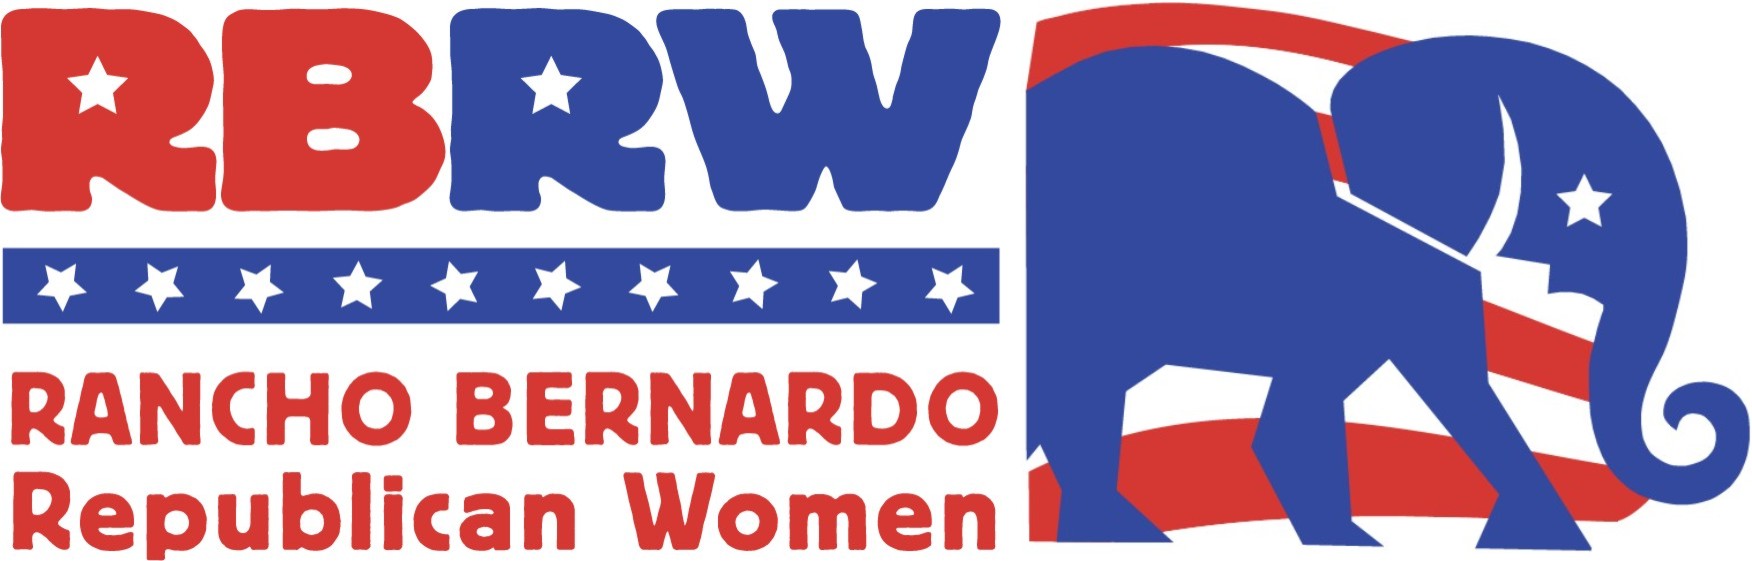 Rancho Bernardo Republican Women